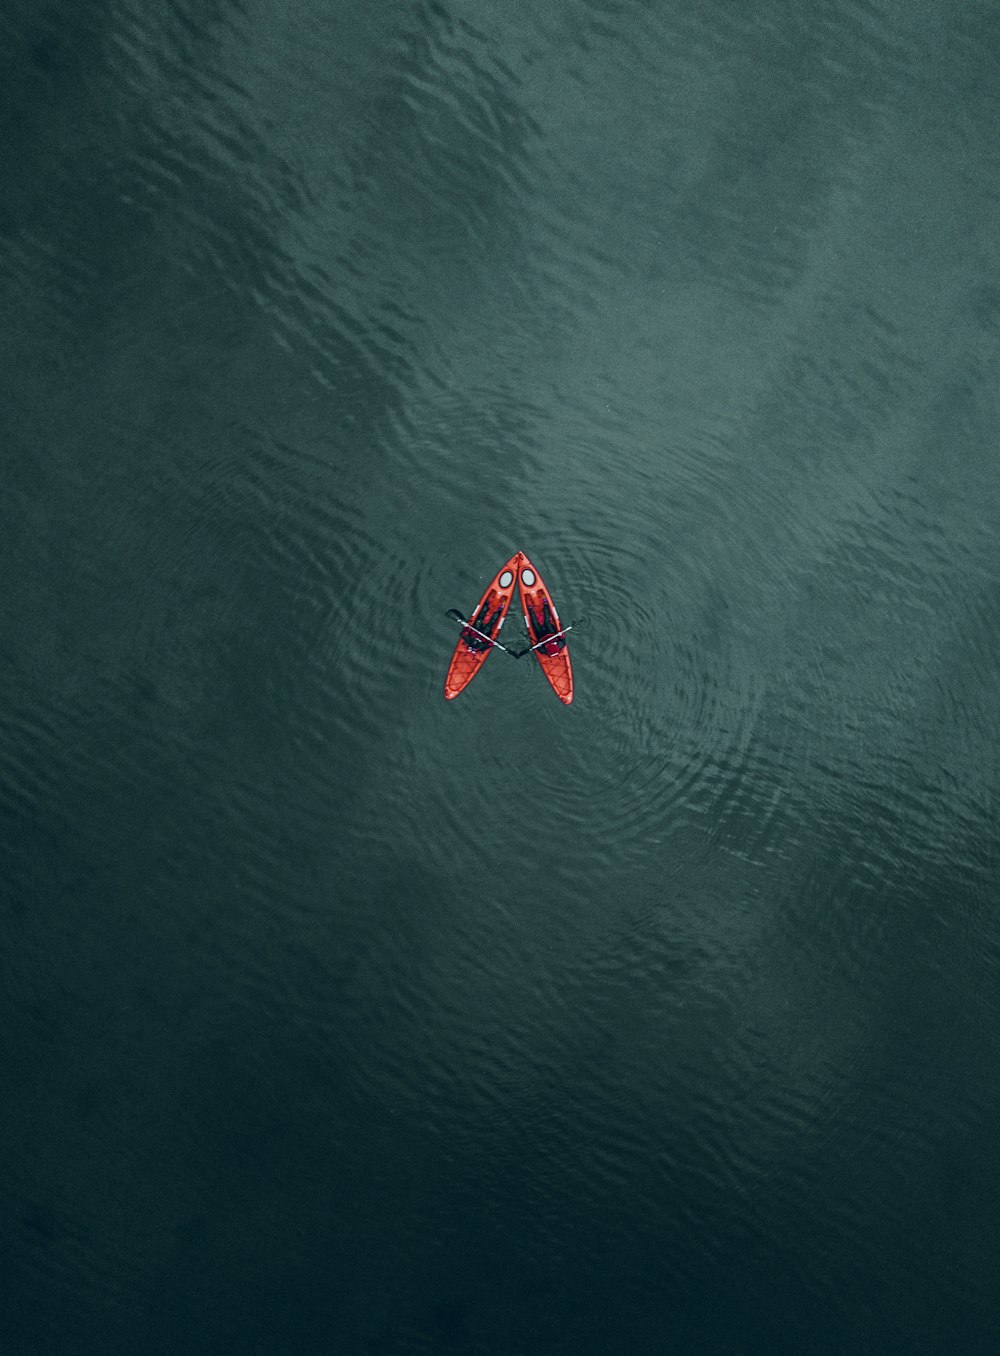 um barco vermelho e branco na água